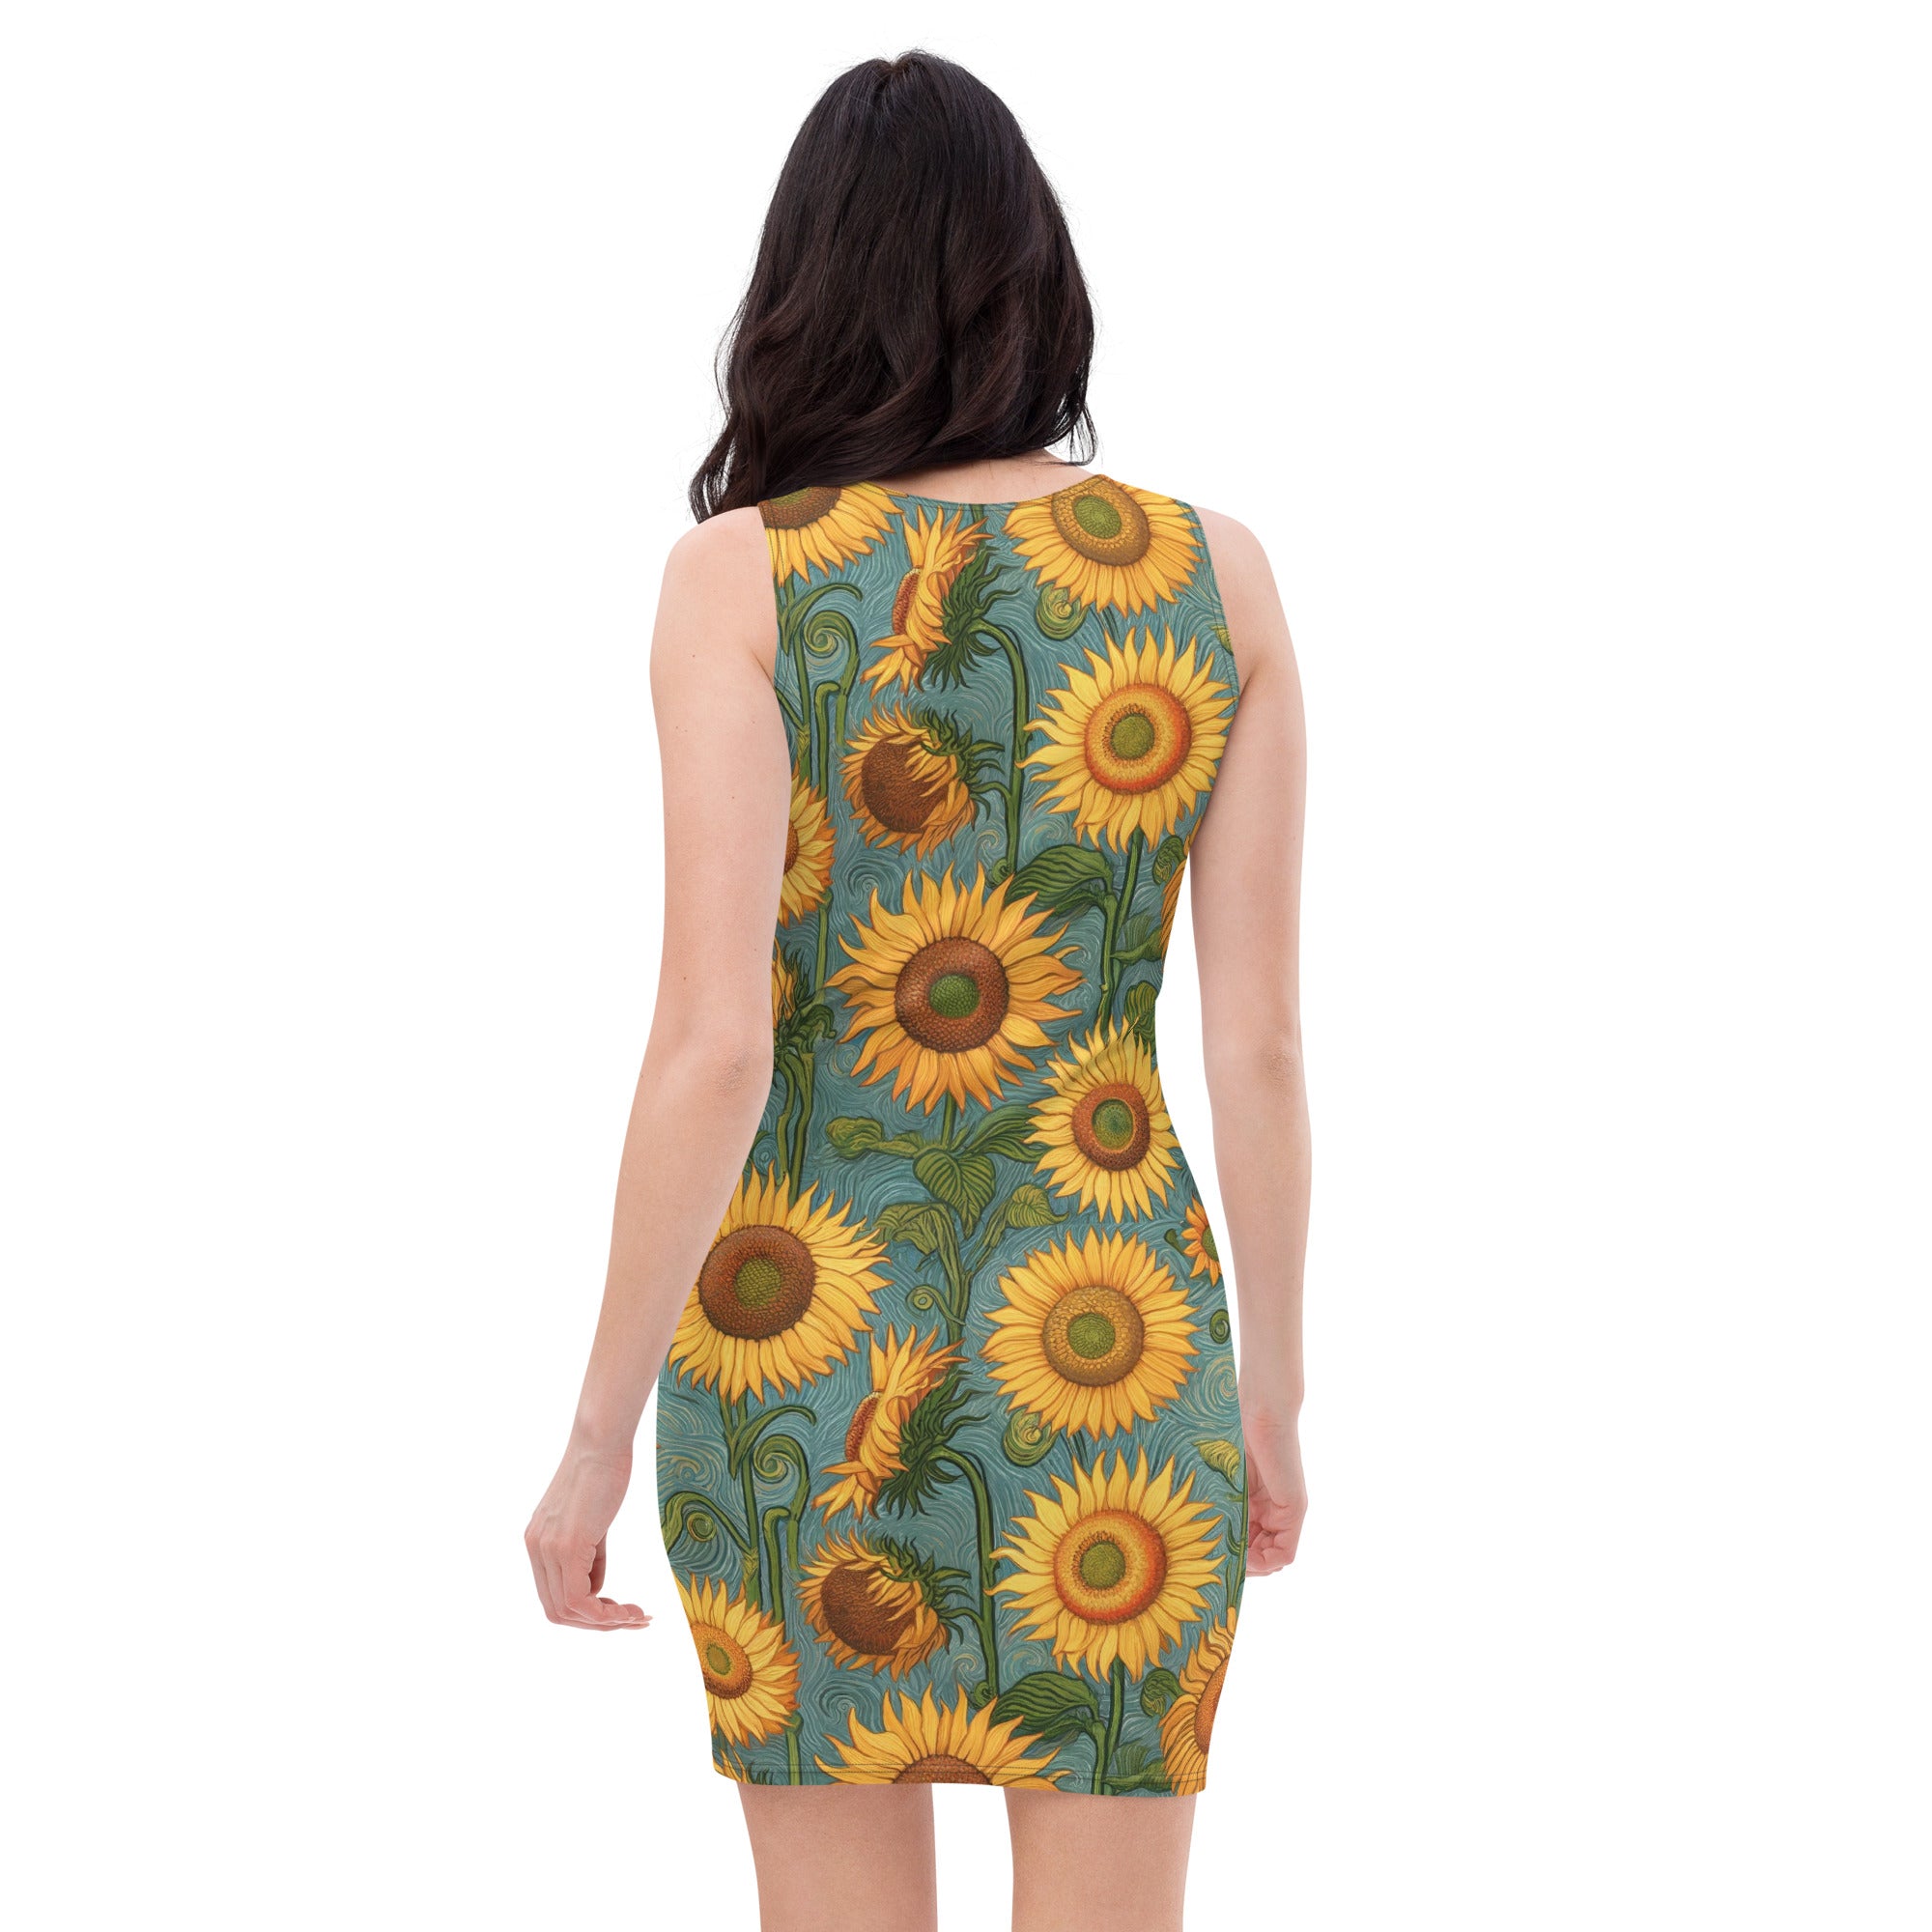 Vincent van Gogh 'Sunflowers' Famous Painting Bodycon Dress | Premium Art Dress